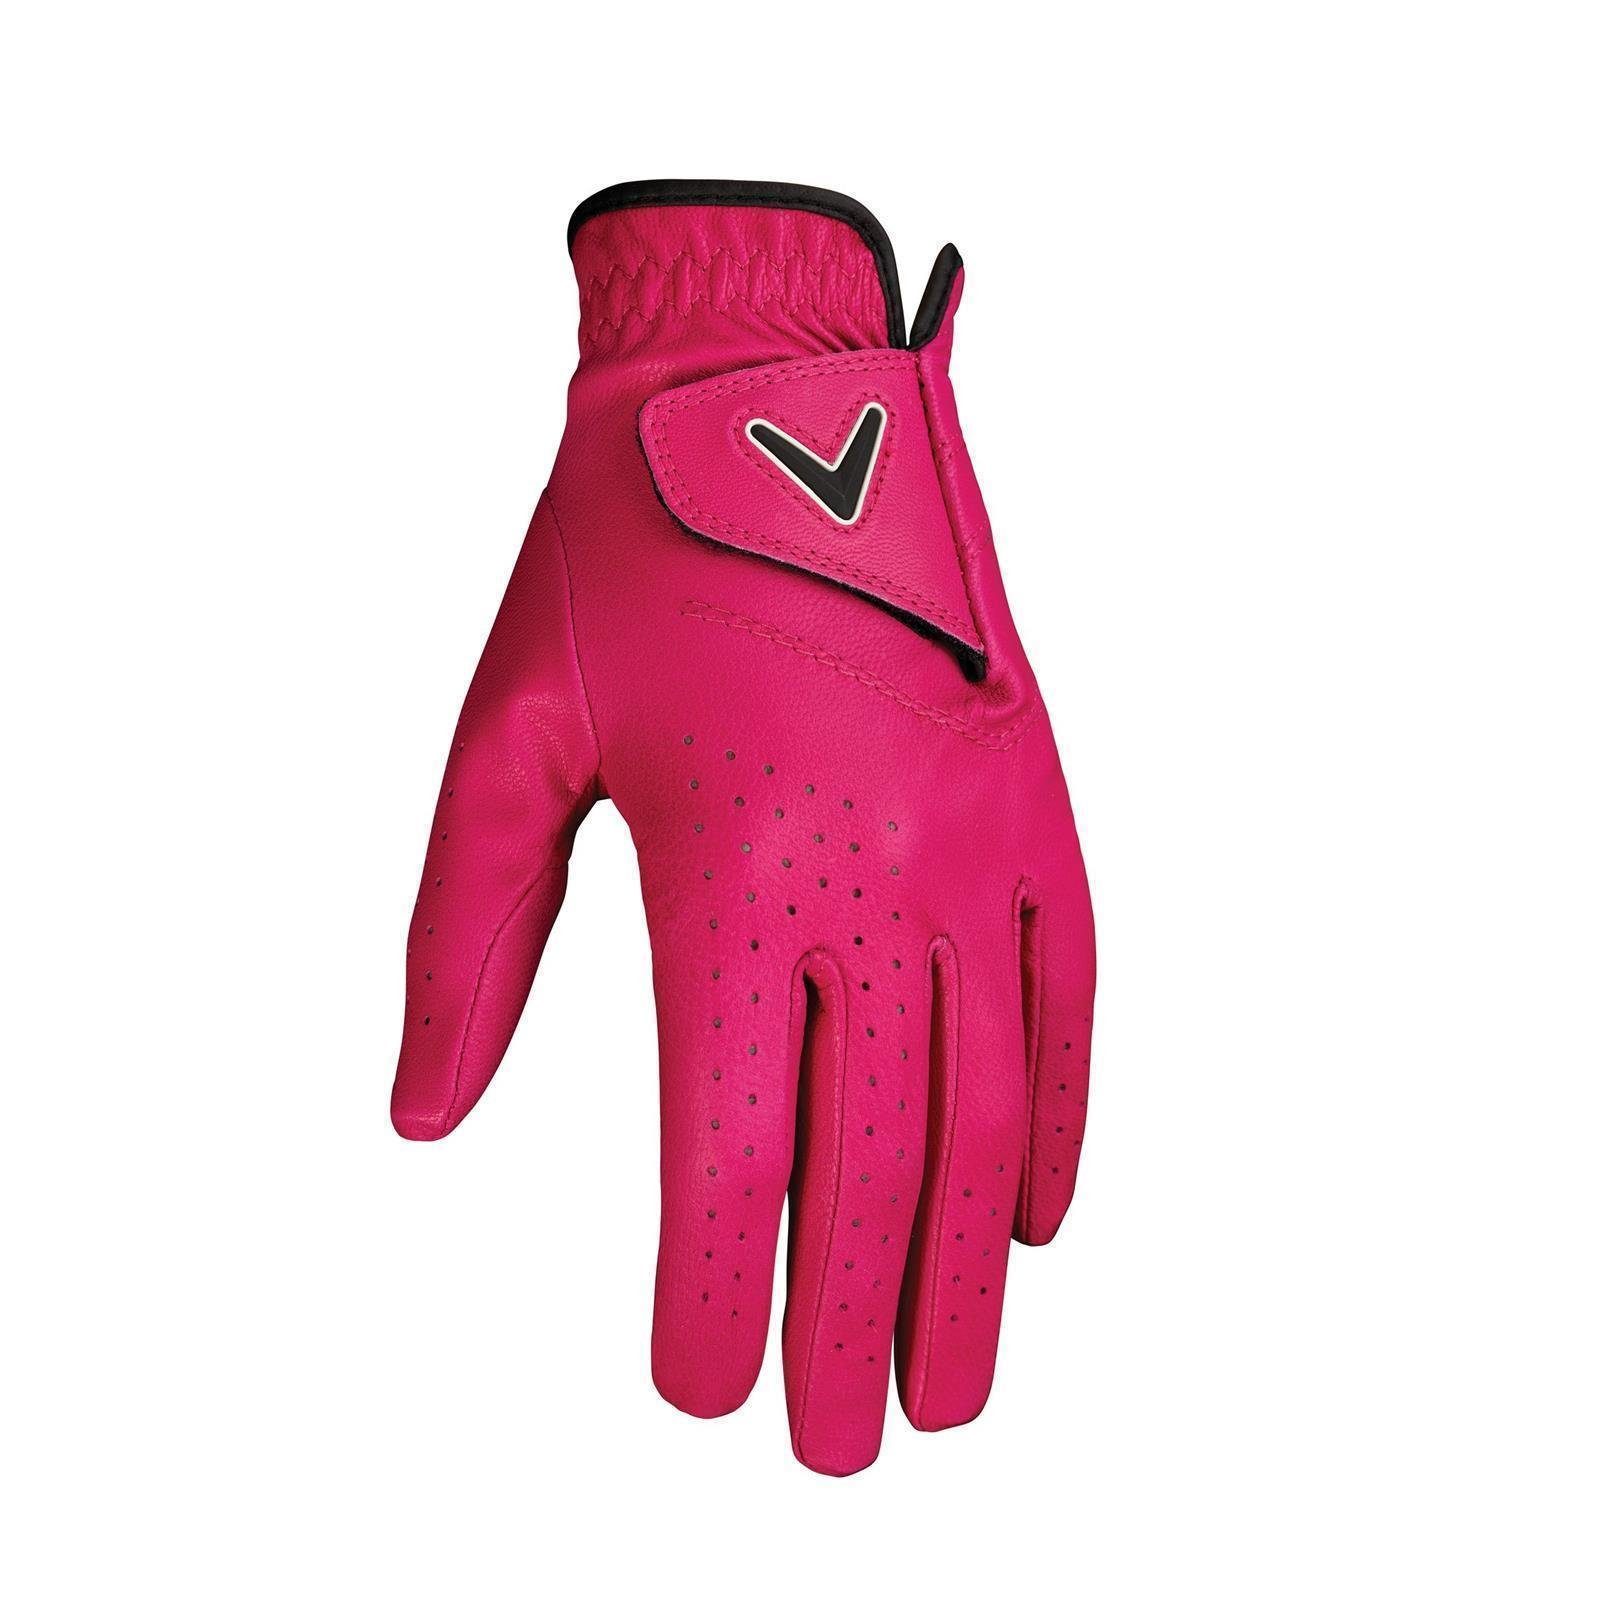 Callaway Woman/Ladies Golf & Color Callaway Handschuh Leder,OptiFit,verstellbarer Golfhandschuhe leicht Opti Verschluss,dünn